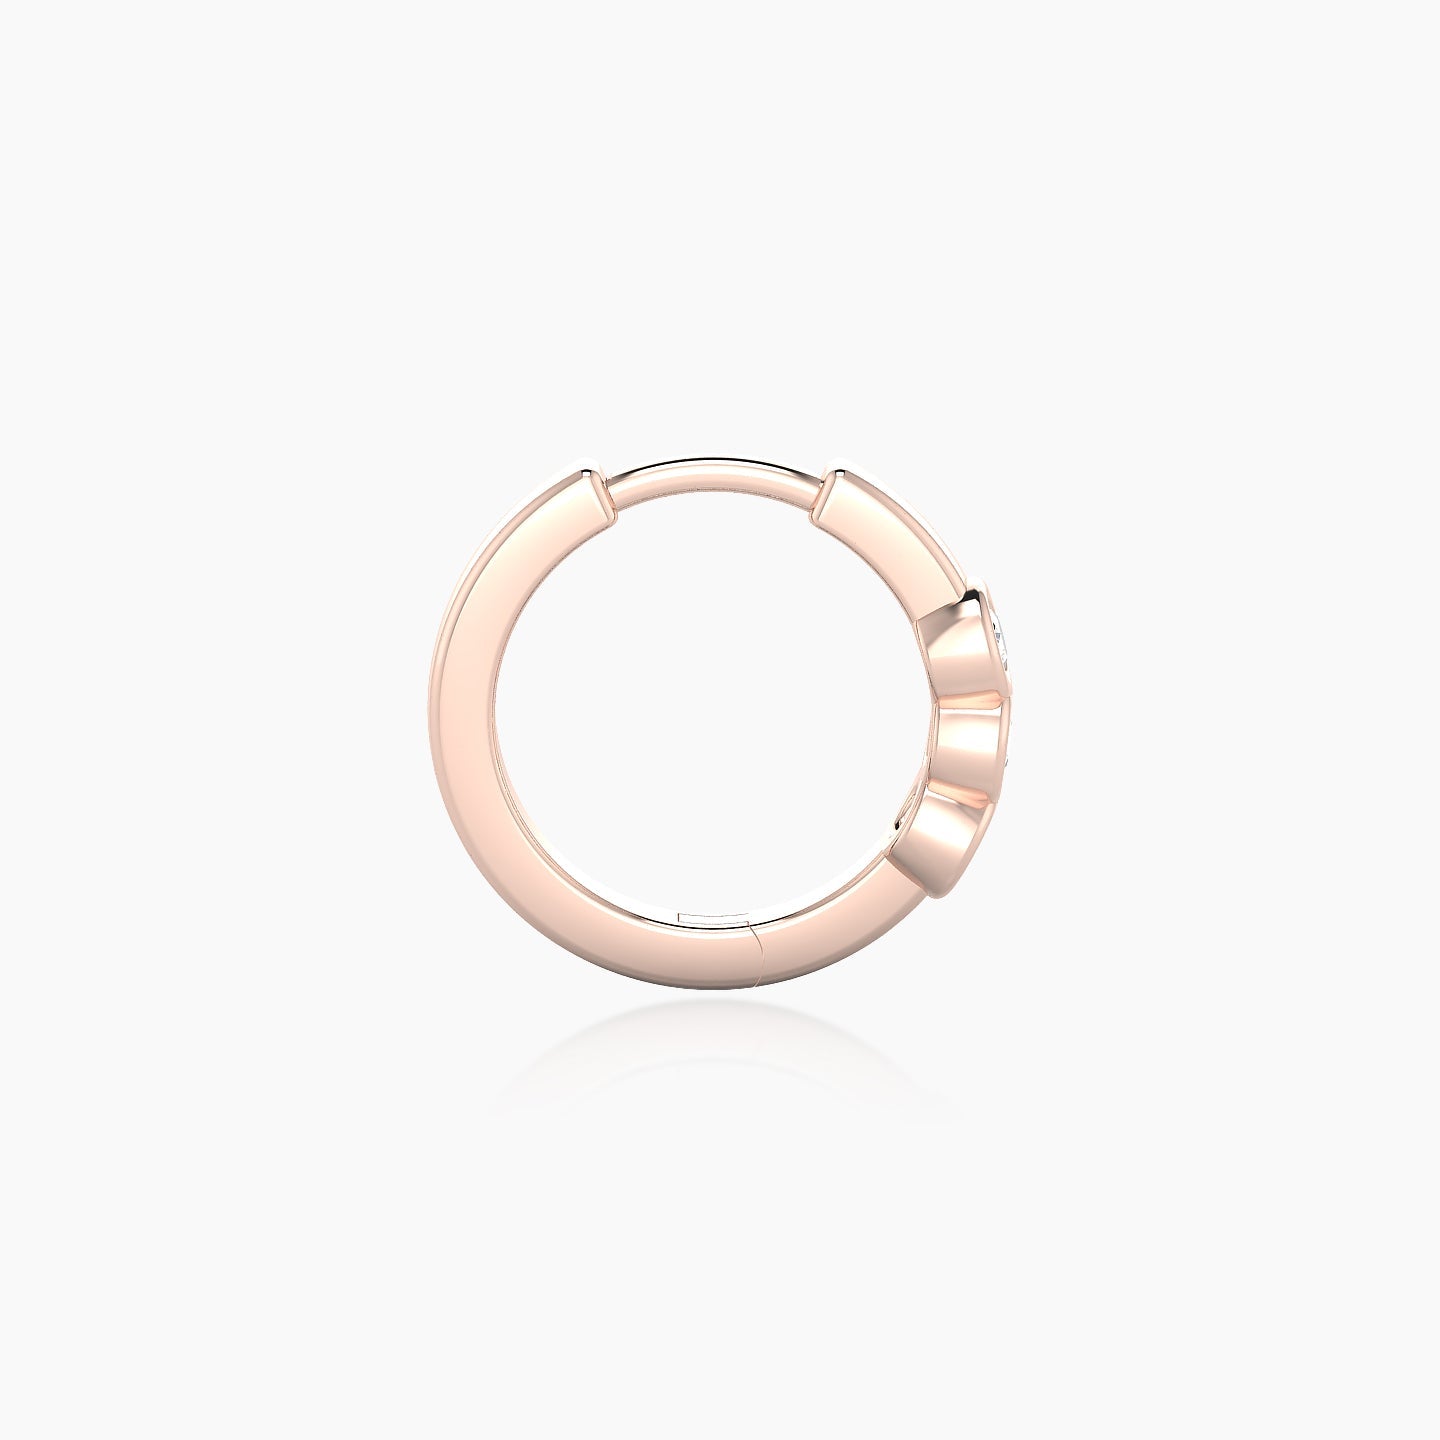 Leto | 18k Rose Gold 8 mm Trilogy Diamond Nose Ring Piercing